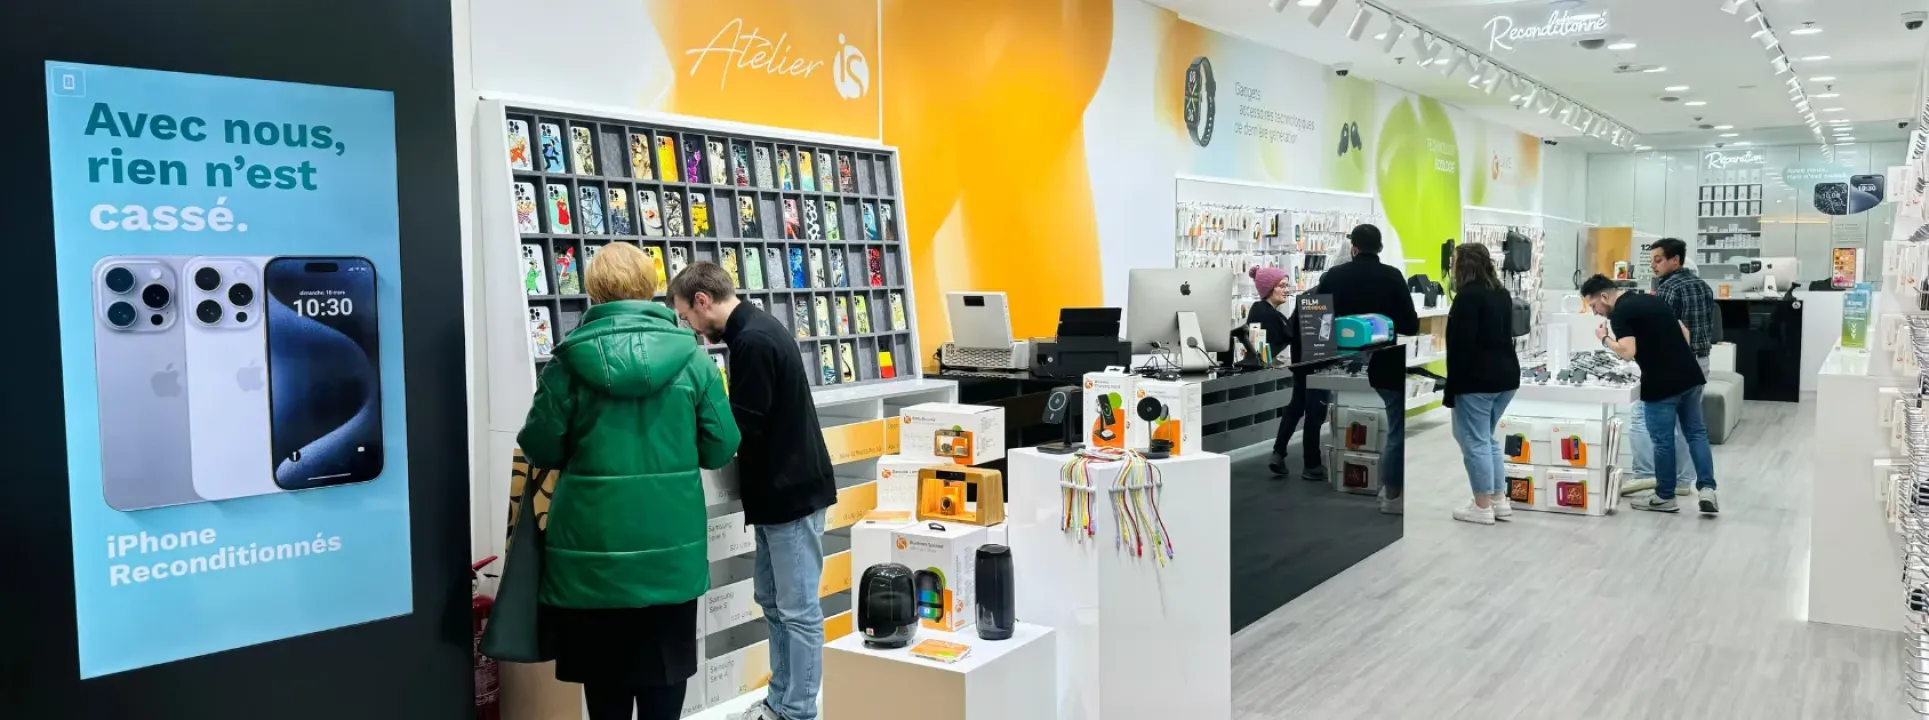 iServices abre quinta tienda en Bélgica con el Atelier iS  blog post